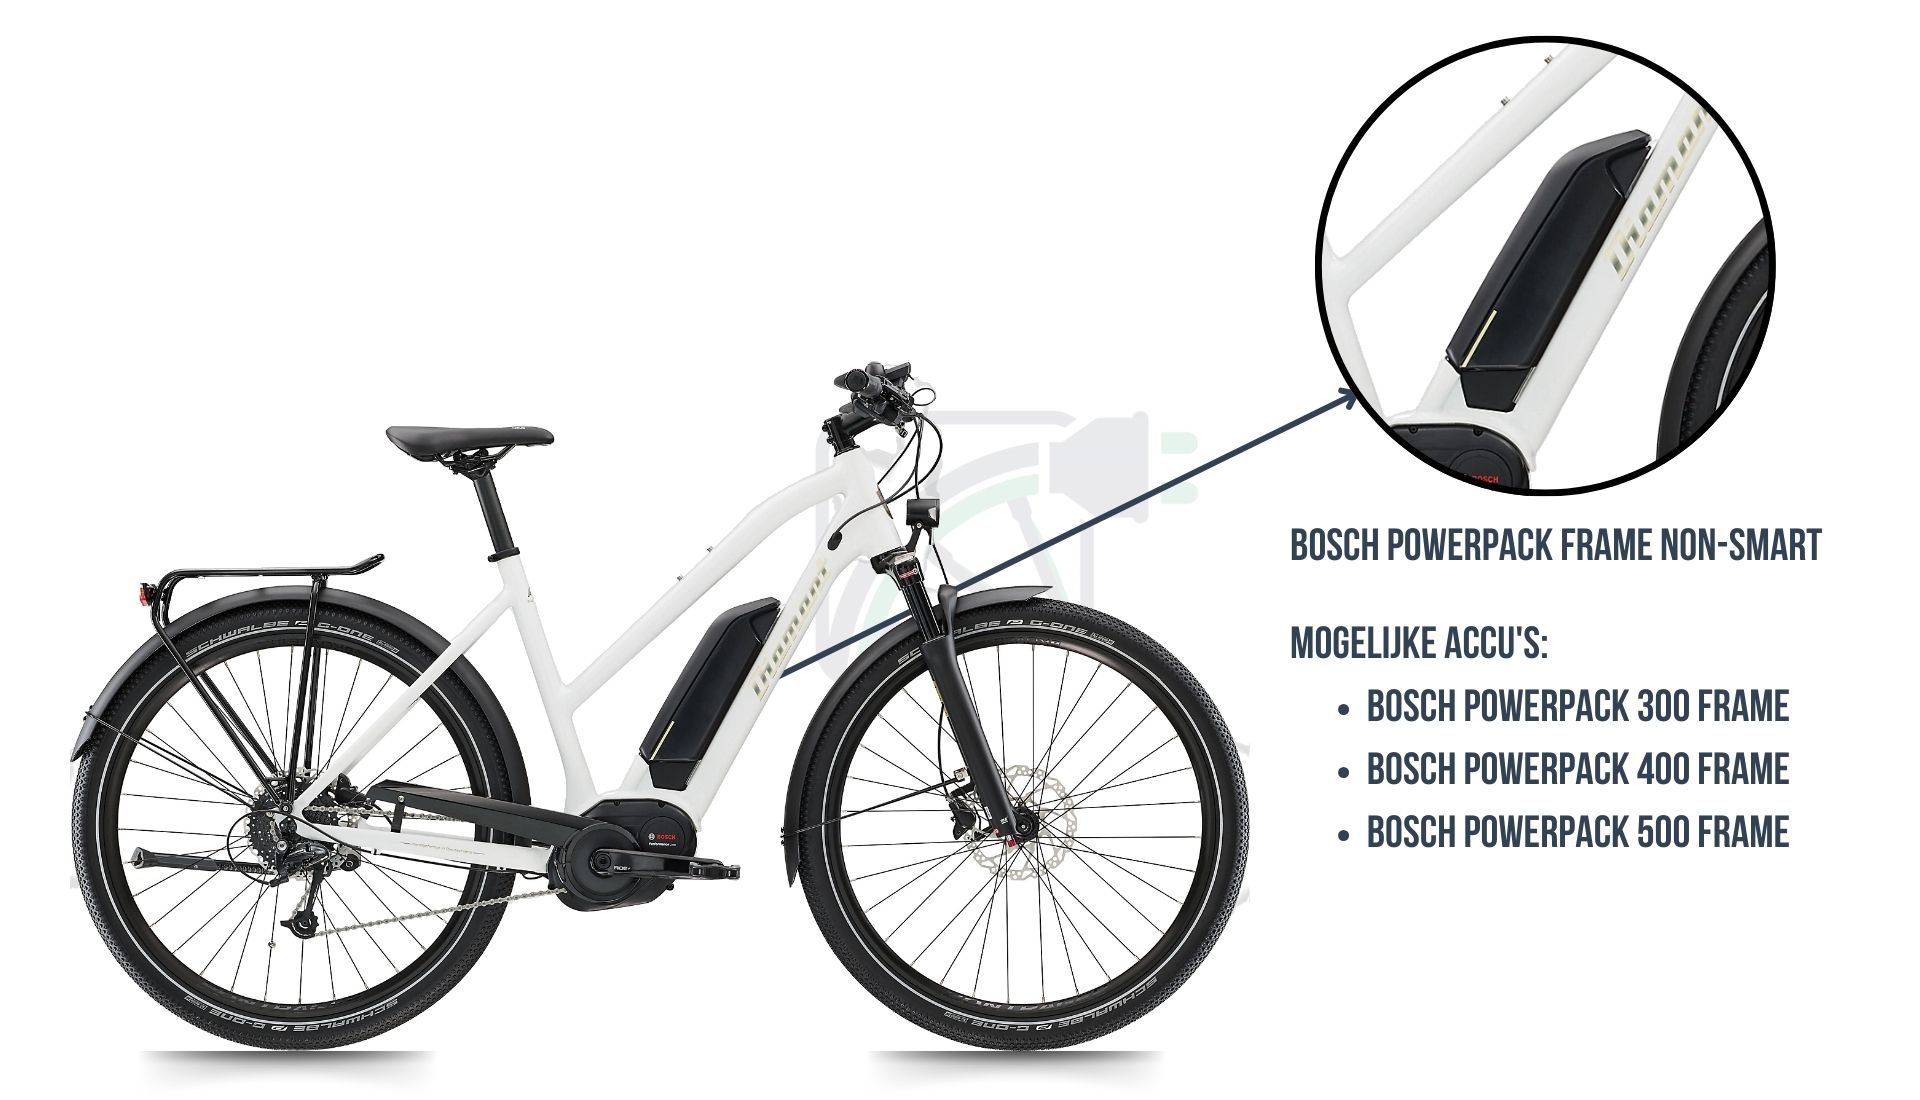 Op deze afbeelding zie je Diamant Ubari elektrische fiets, hierbij is uitgelicht welke accu de juiste is voor deze fiets, namelijk de Bosch Powerpack 300/400/500 non-SMART frame